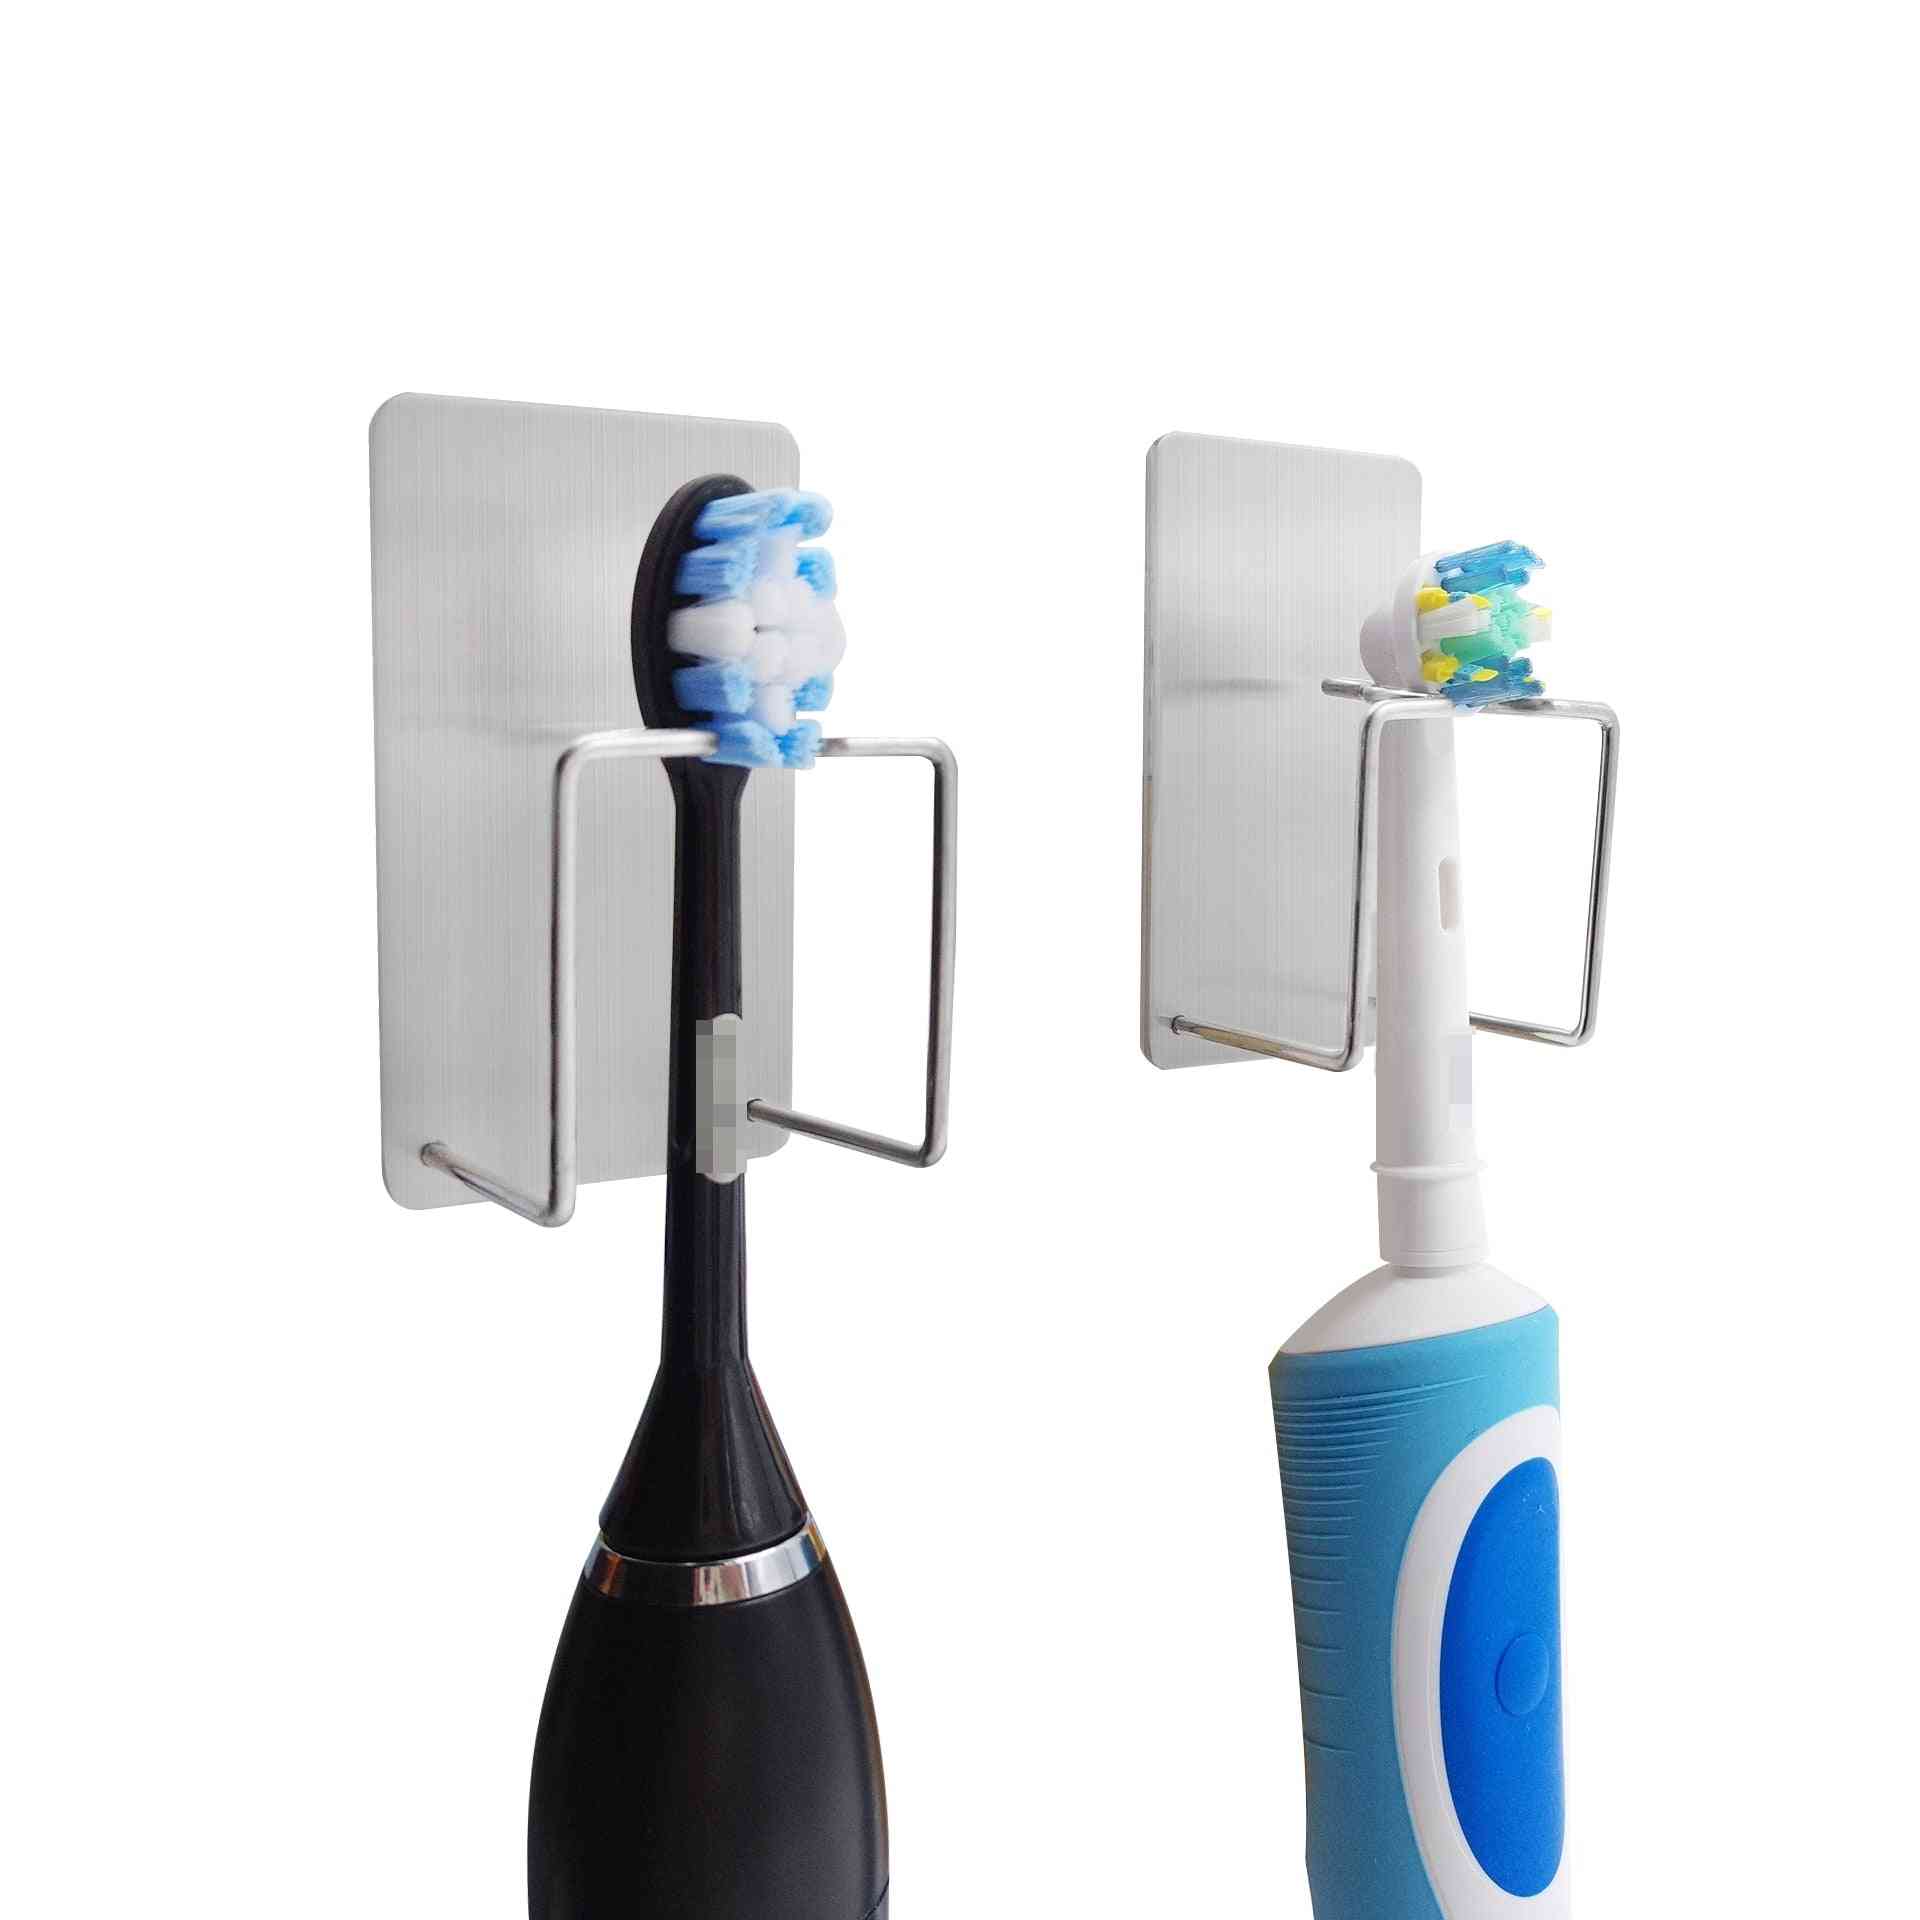 Adesivi per gancio da parete in acciaio inossidabile 304 da utilizzare per dentifricio, spazzolino da denti, accessori per il bagno.